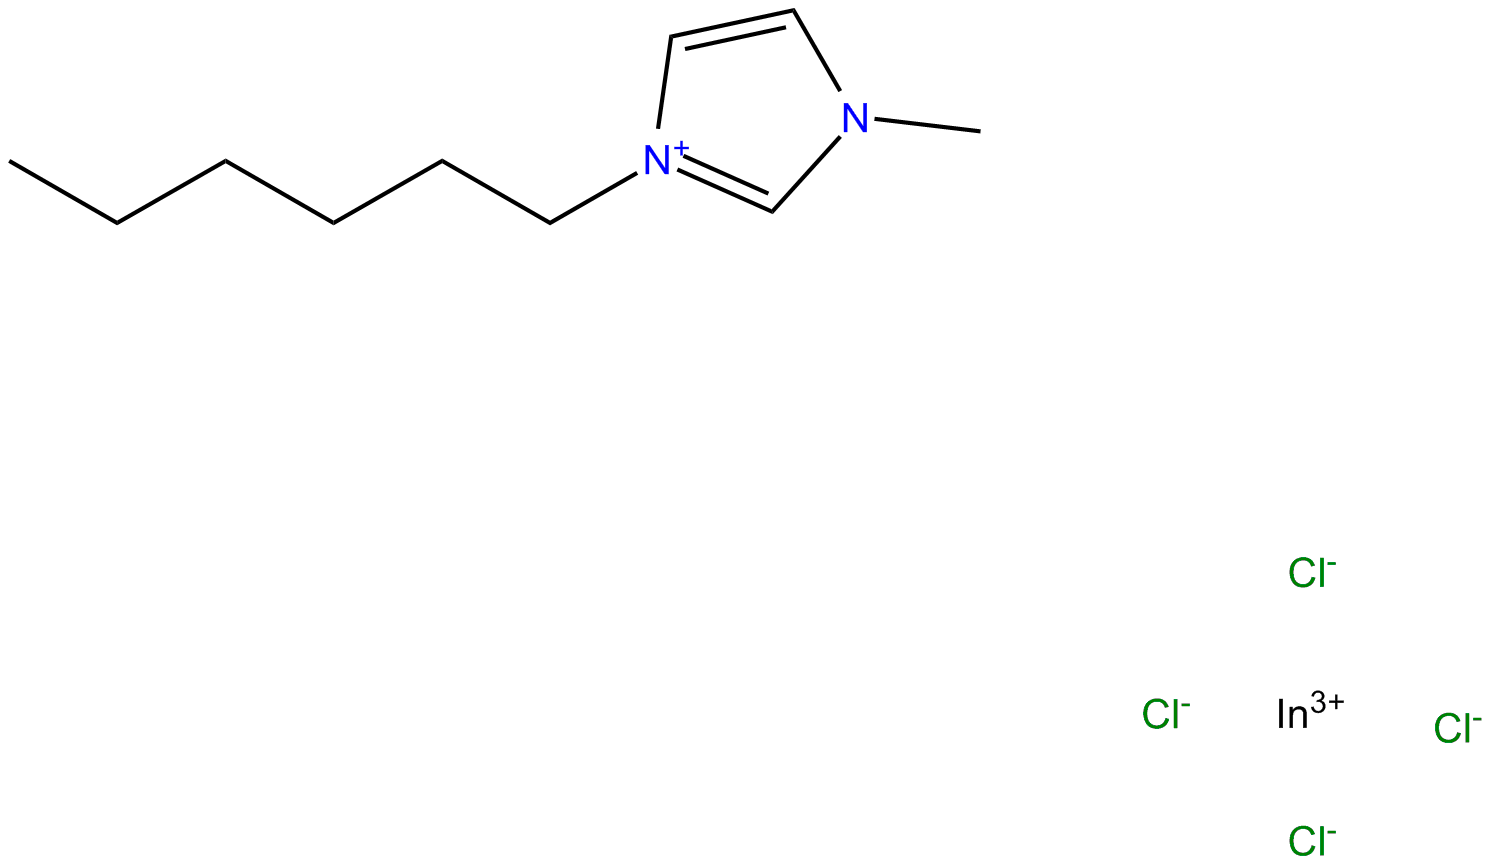 Image of 1-methyl-3-hexylimidazolium chloroindium